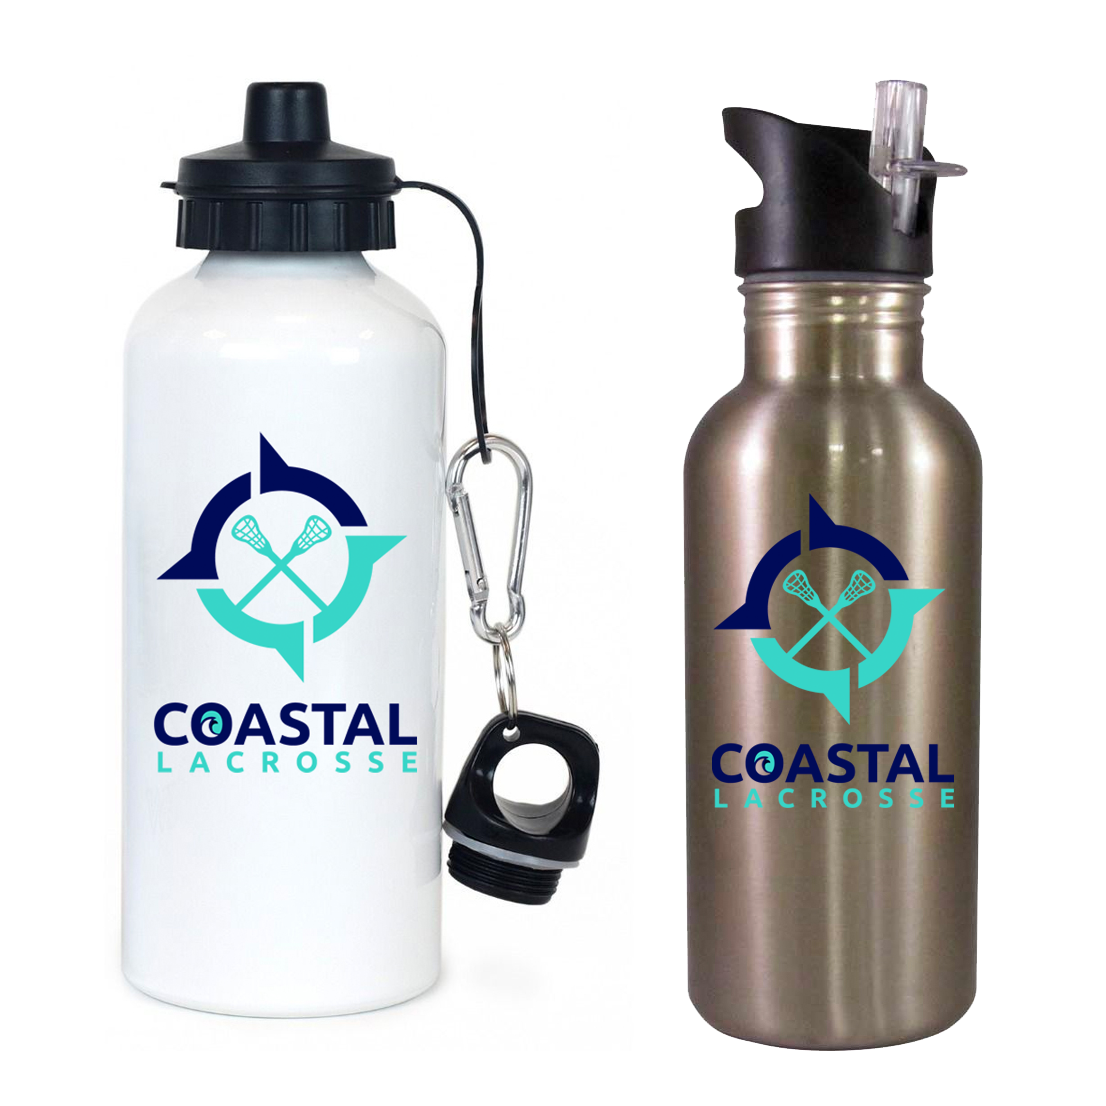 Coastal Lacrosse Team Water Bottle